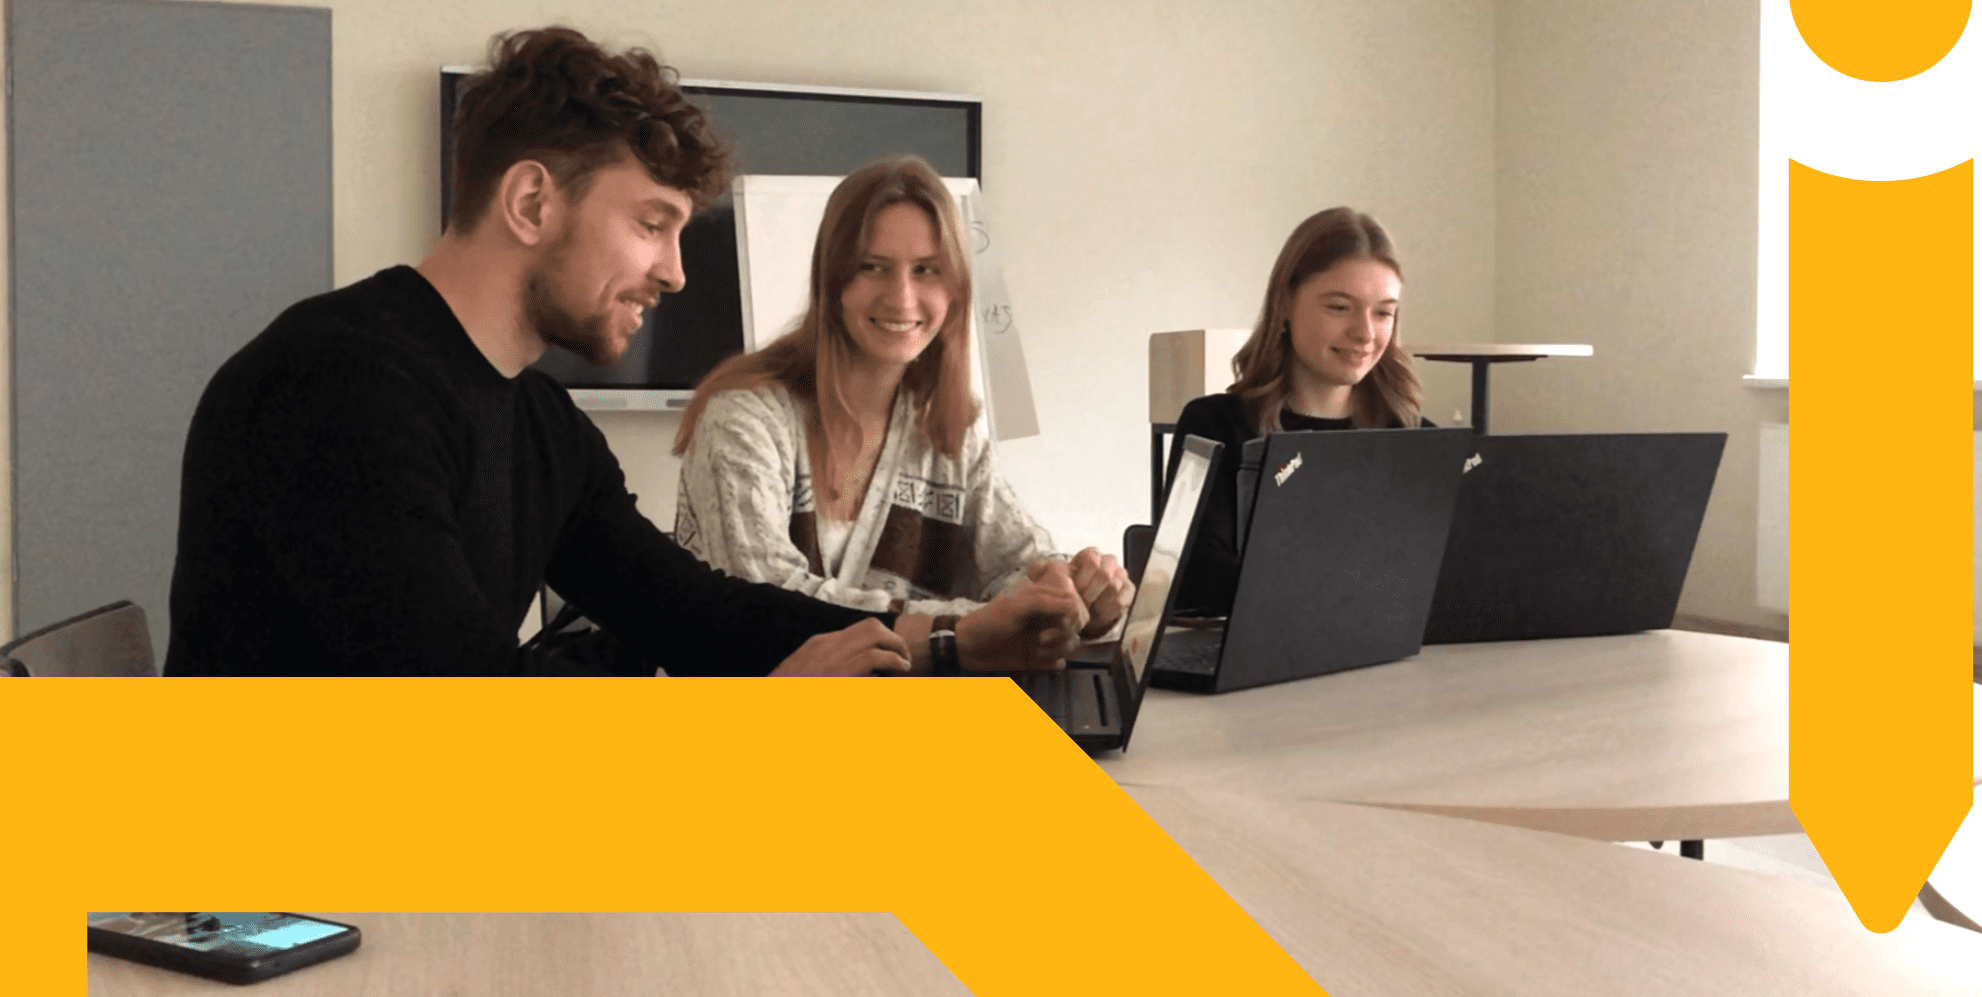 EdTech sprendimų išbandymas Lietuvos švietimo įstaigose – įkvepianti mokytojų, mokinių bei startuolių bendrakūryba